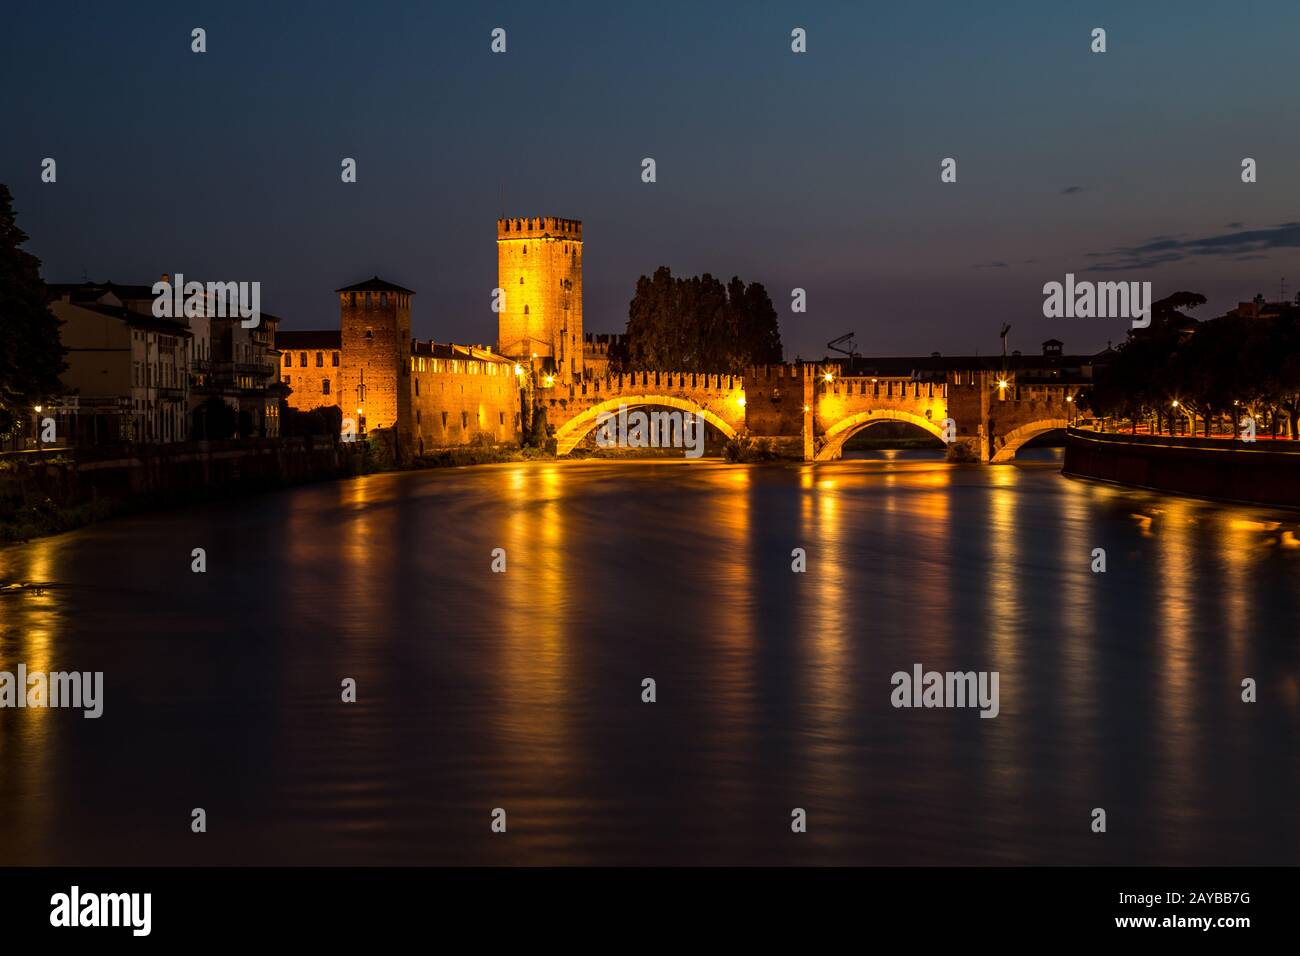 Verona city at night Stock Photo